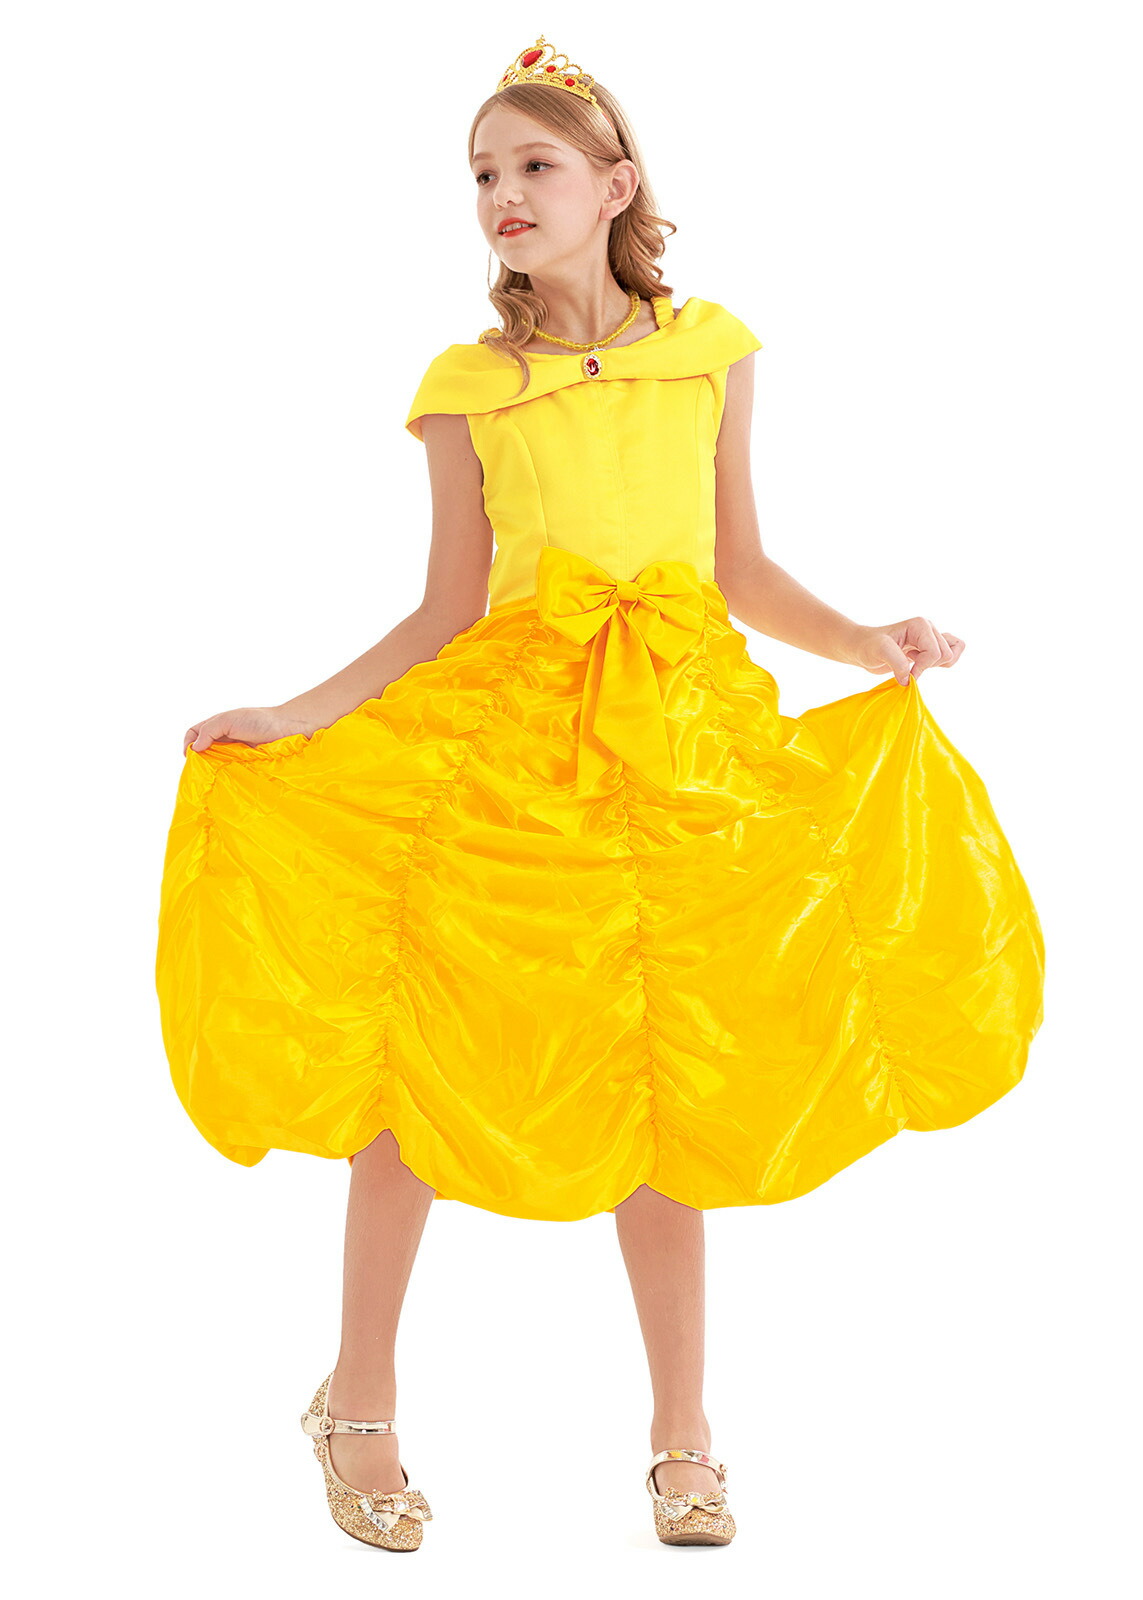 ドレス プリンセス コスチューム 子供 仮装 女の子 コスチューム ダンス 衣装 コスプレ プレゼント リトルプリンセス 黄色 イエロー ベ